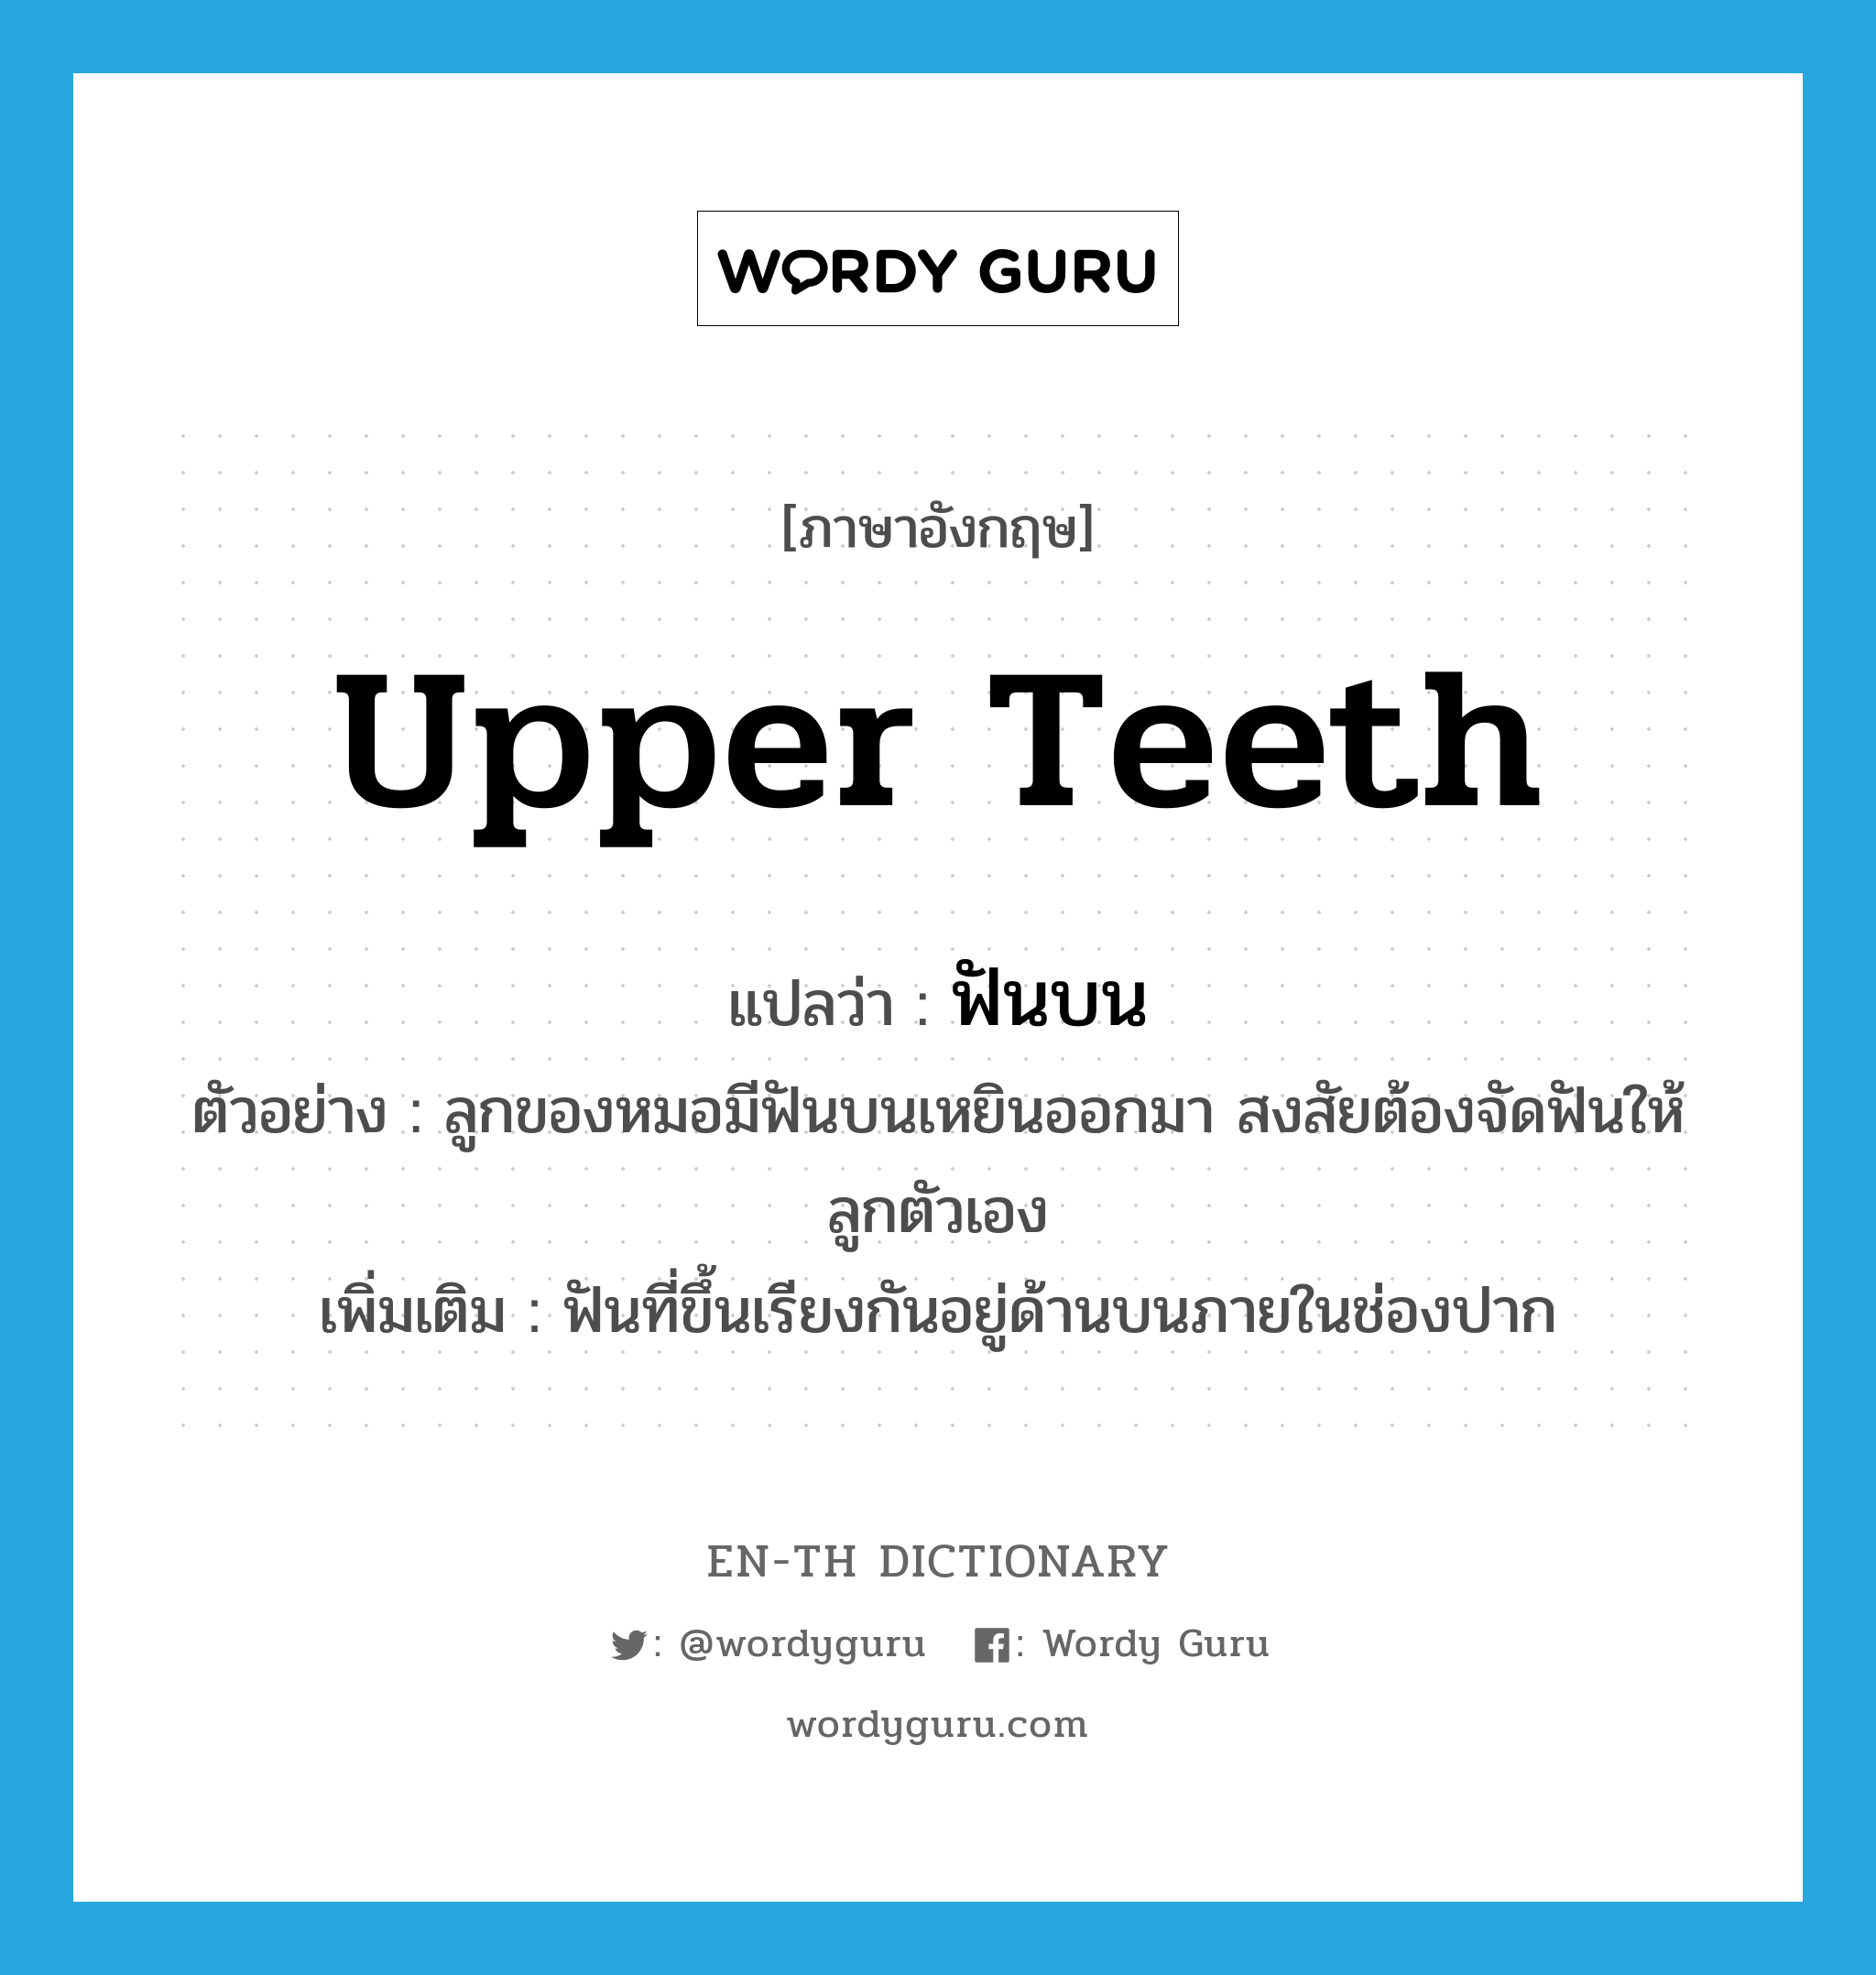 ฟันบน ภาษาอังกฤษ?, คำศัพท์ภาษาอังกฤษ ฟันบน แปลว่า upper teeth ประเภท N ตัวอย่าง ลูกของหมอมีฟันบนเหยินออกมา สงสัยต้องจัดฟันให้ลูกตัวเอง เพิ่มเติม ฟันที่ขึ้นเรียงกันอยู่ด้านบนภายในช่องปาก หมวด N